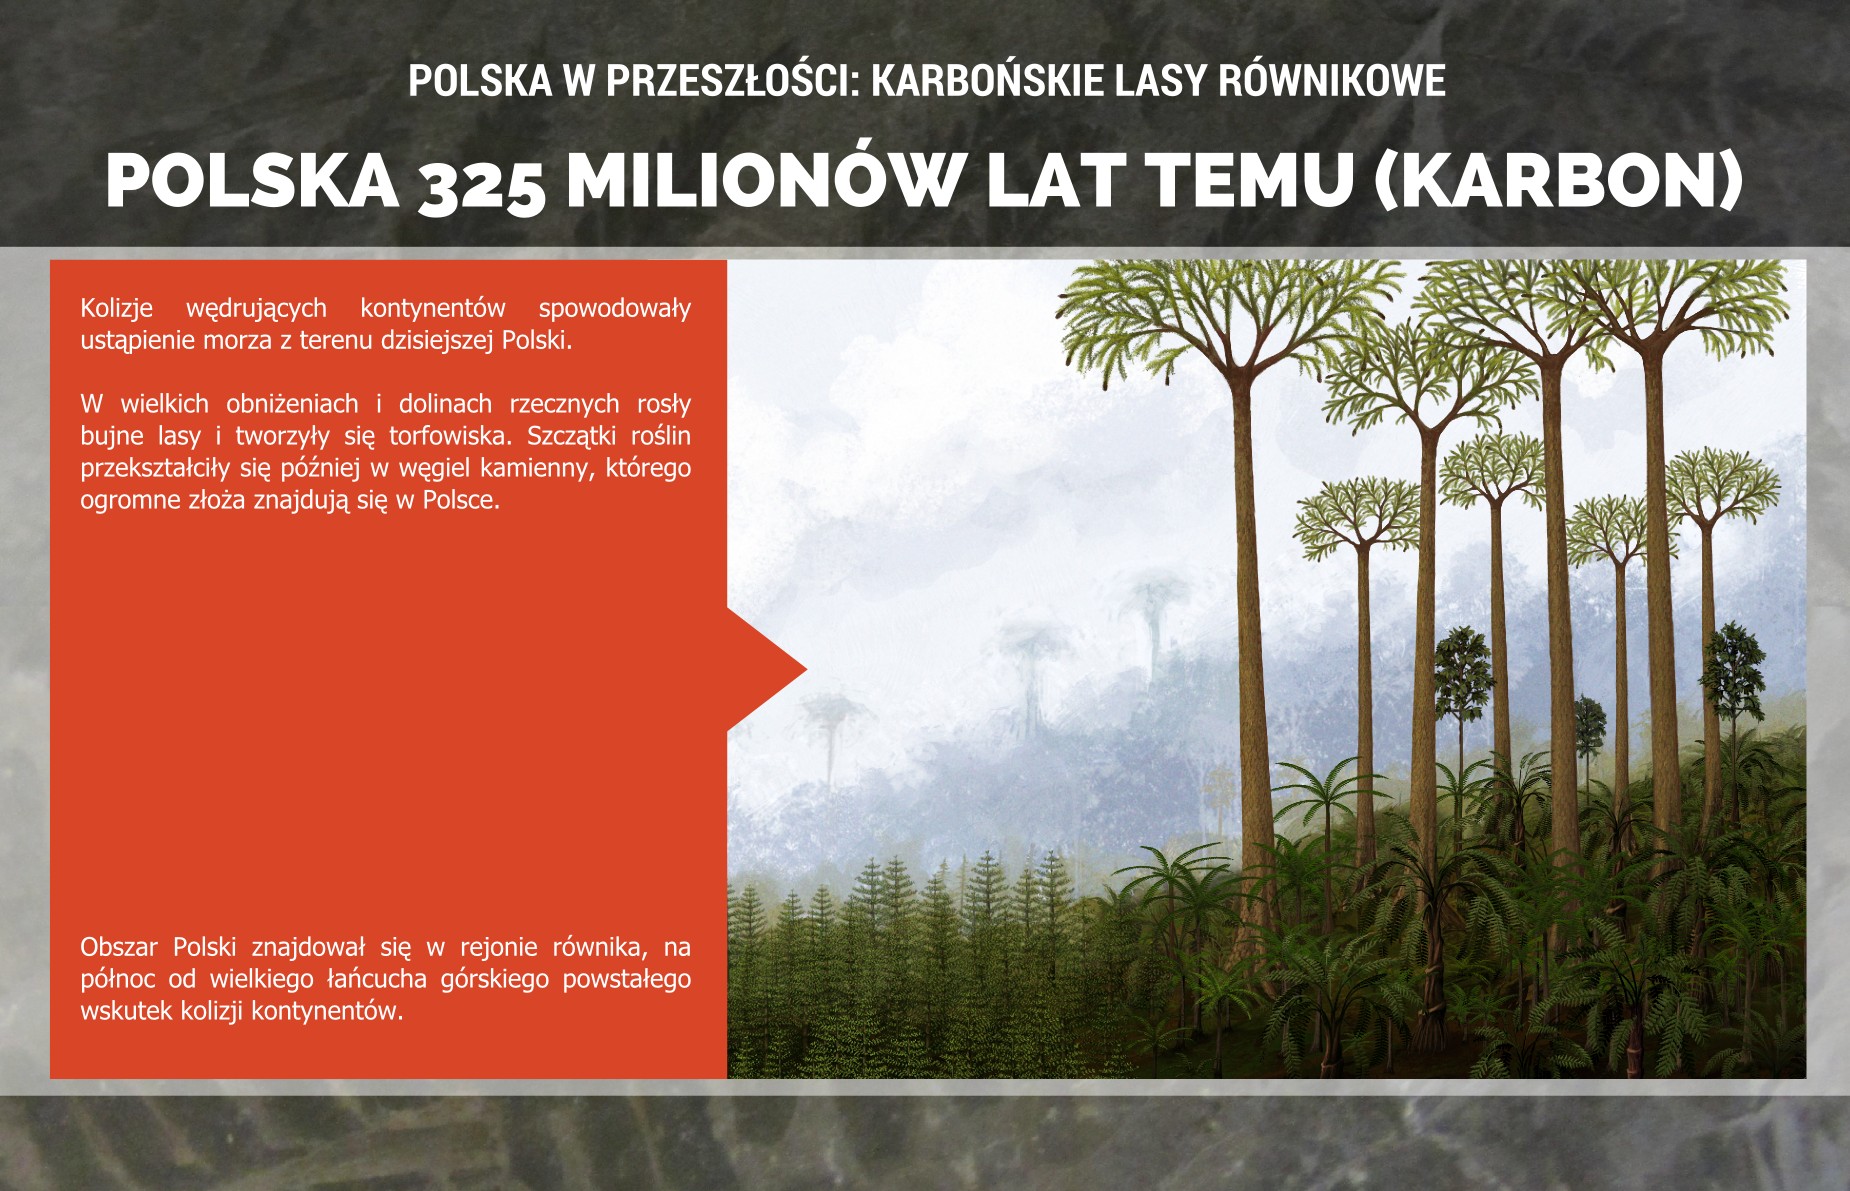 Polska w karbonie: lasy, które dały początek złożom węgla kamiennego - plakat.